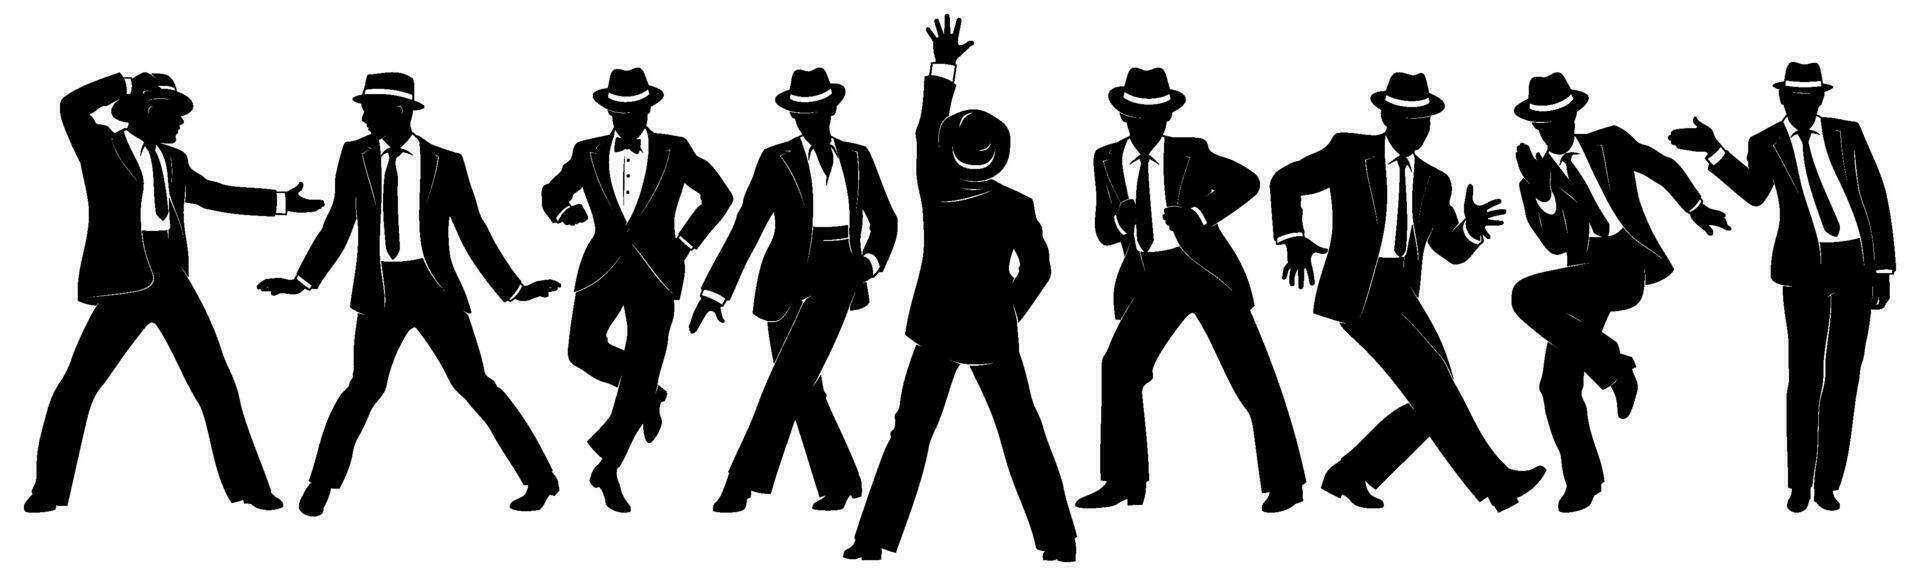 siluetas conjunto de bailando hombres en clásico trajes y sombreros. vector clipart aislado en blanco.